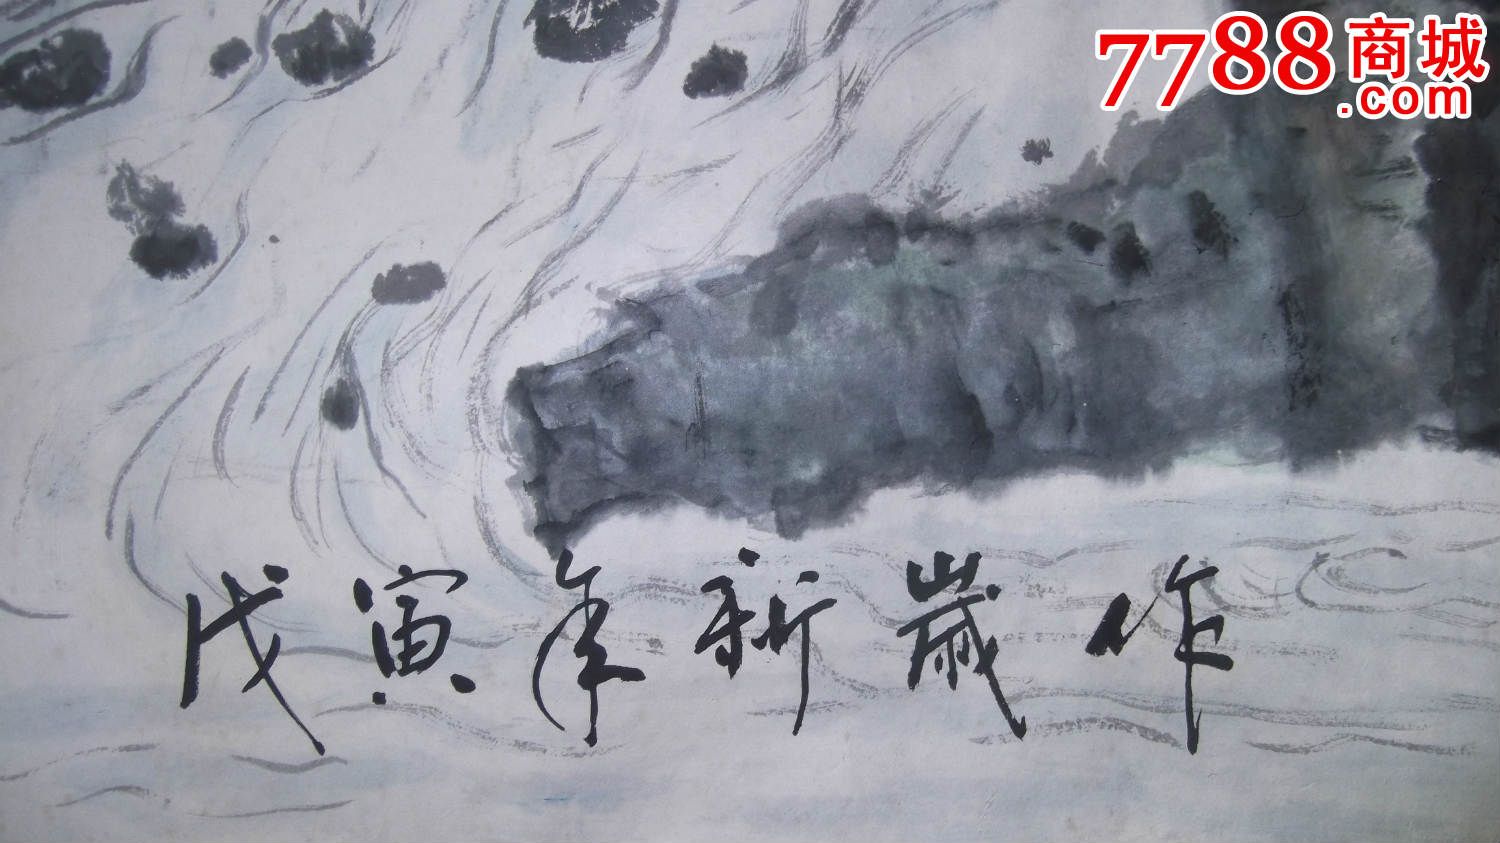 国画山水,尺寸大,1998年画的,篆书题字是春喜松双,一角少一点